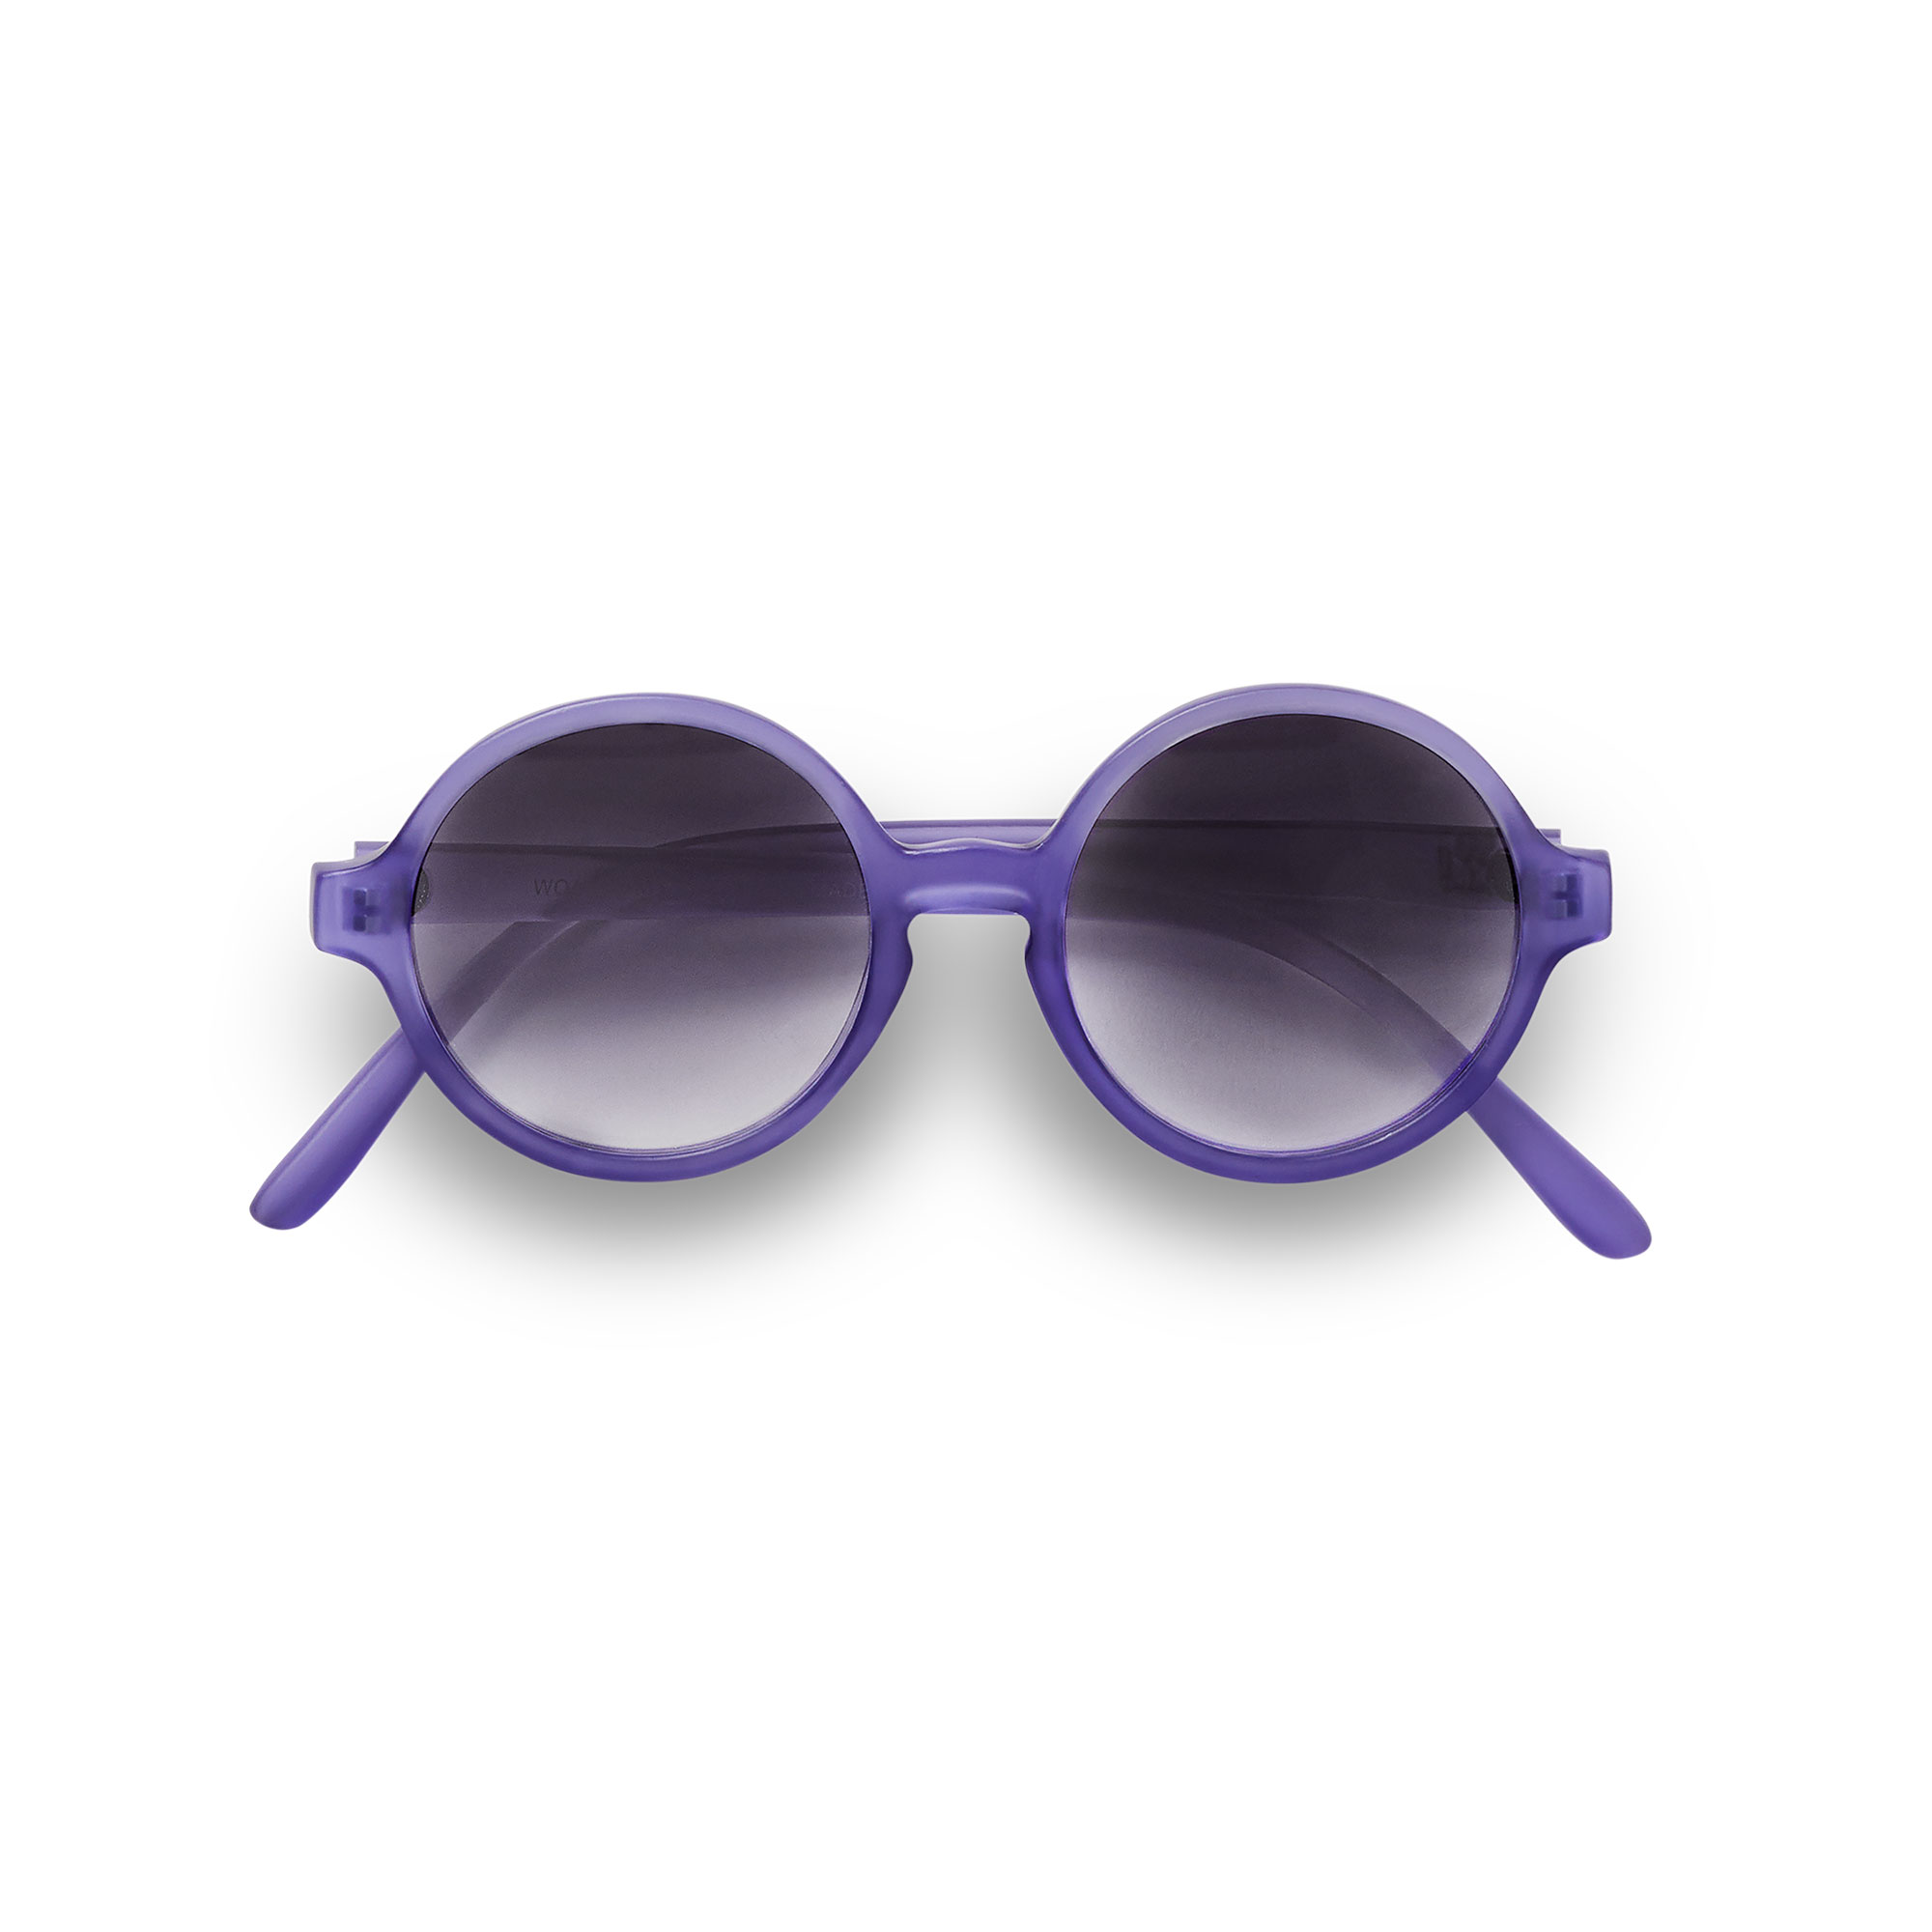 KIETLA WOAM slnečné okuliare 0-2 roky- purple